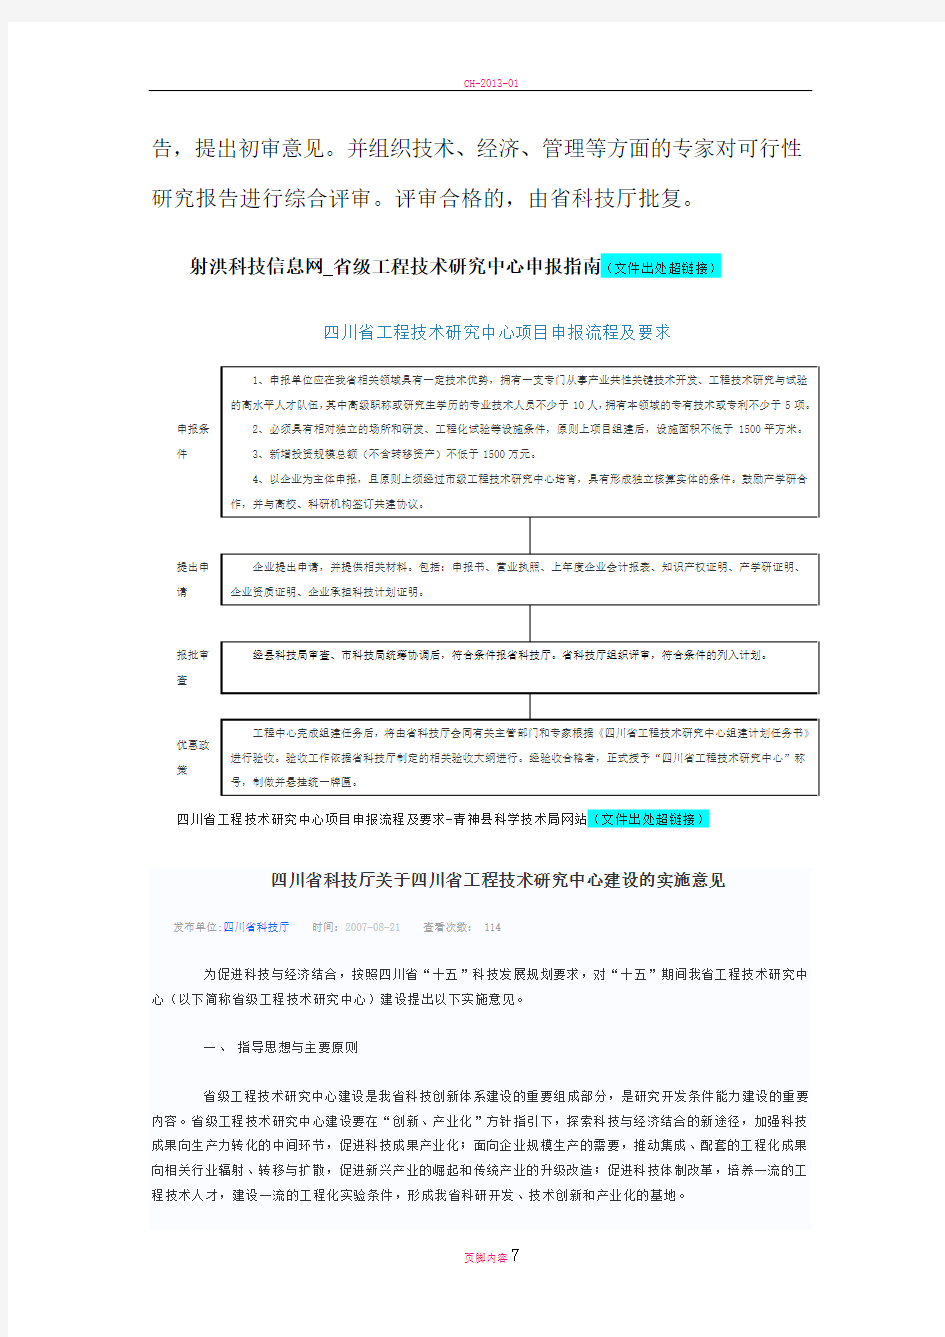 四川省工程技术研究中心项目申报流程及要求